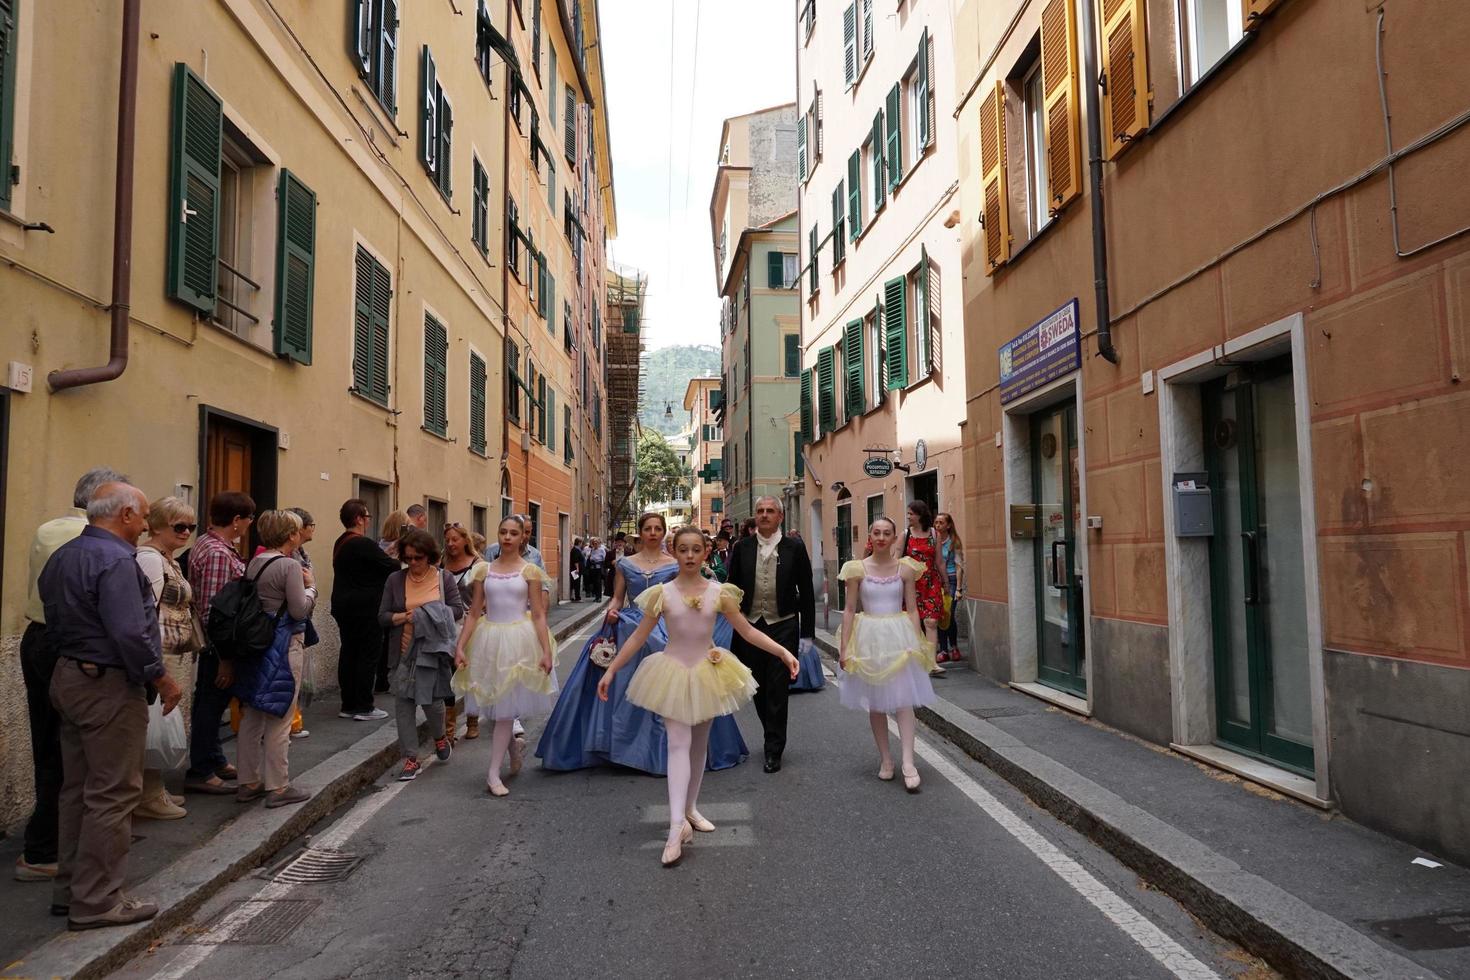 genua, Italien - Maj 5 2018 - 19 århundrade klänning parad för euroflora utställning i de unik scenario av de nervi foto